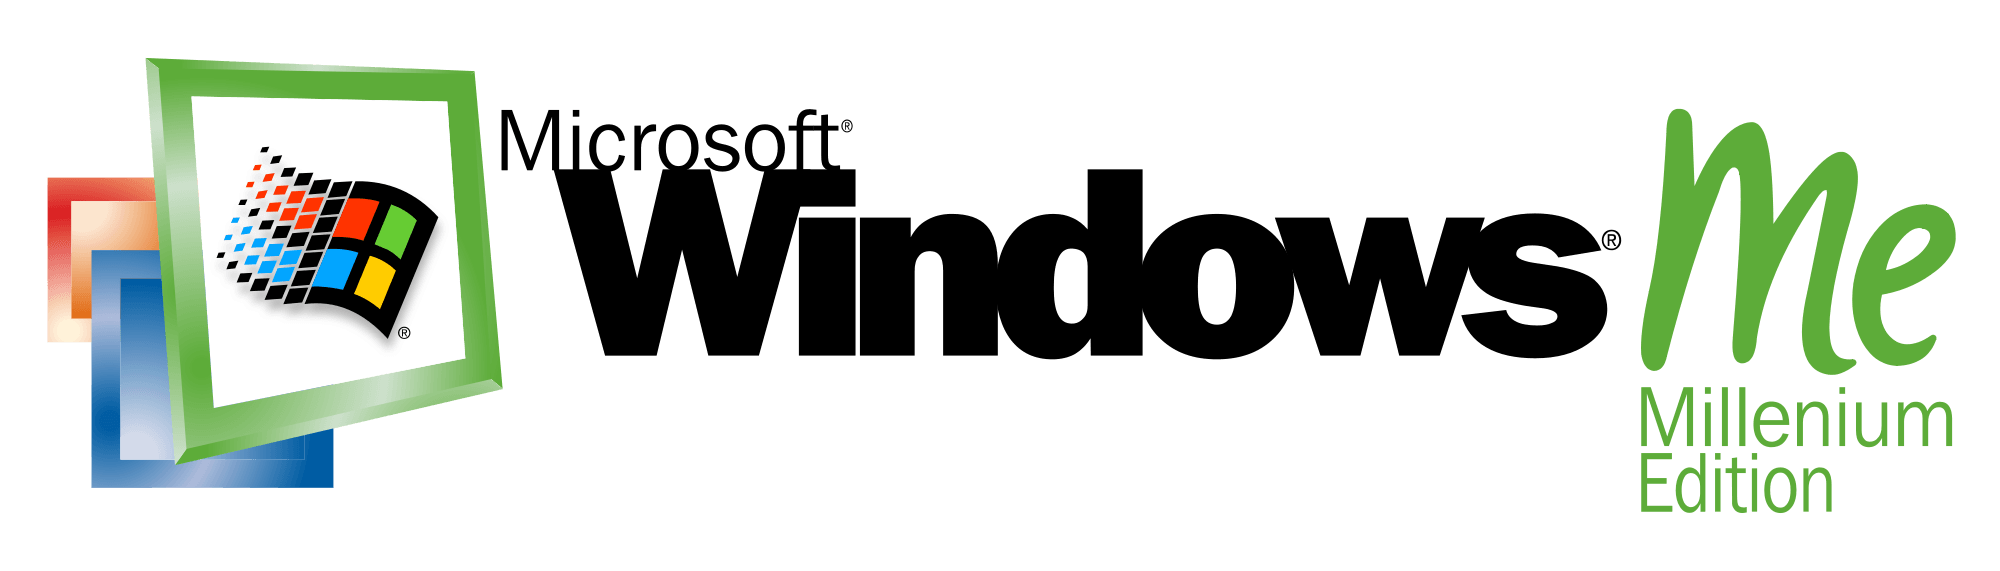 NT Windows 95 Logo - Index of /logos